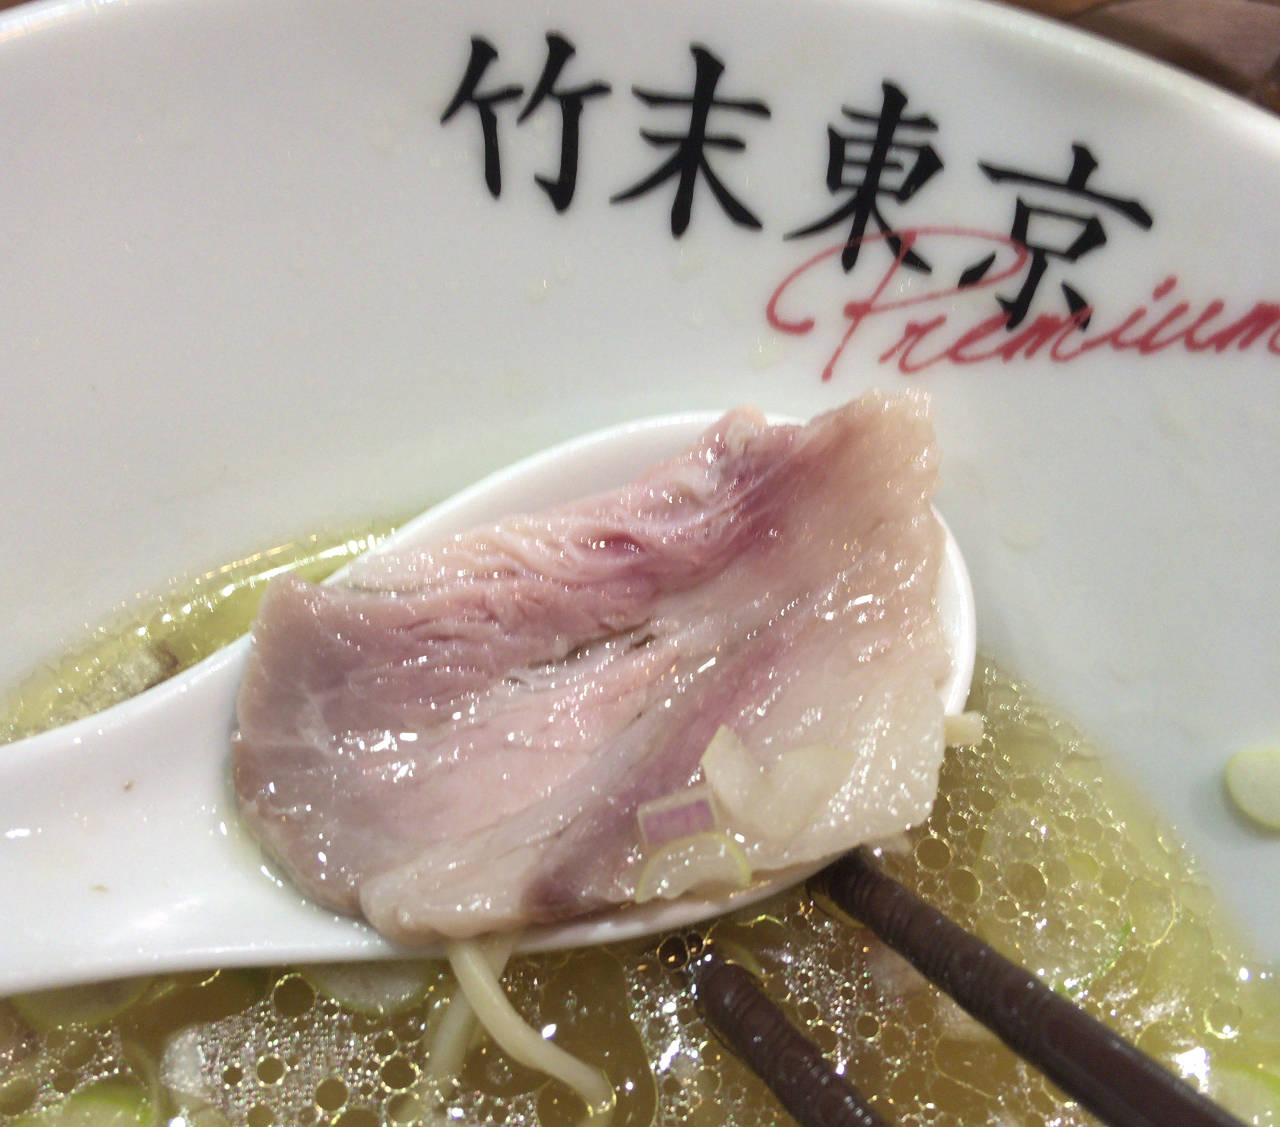 竹末東京プレミアムの塩そば800円の豚肉